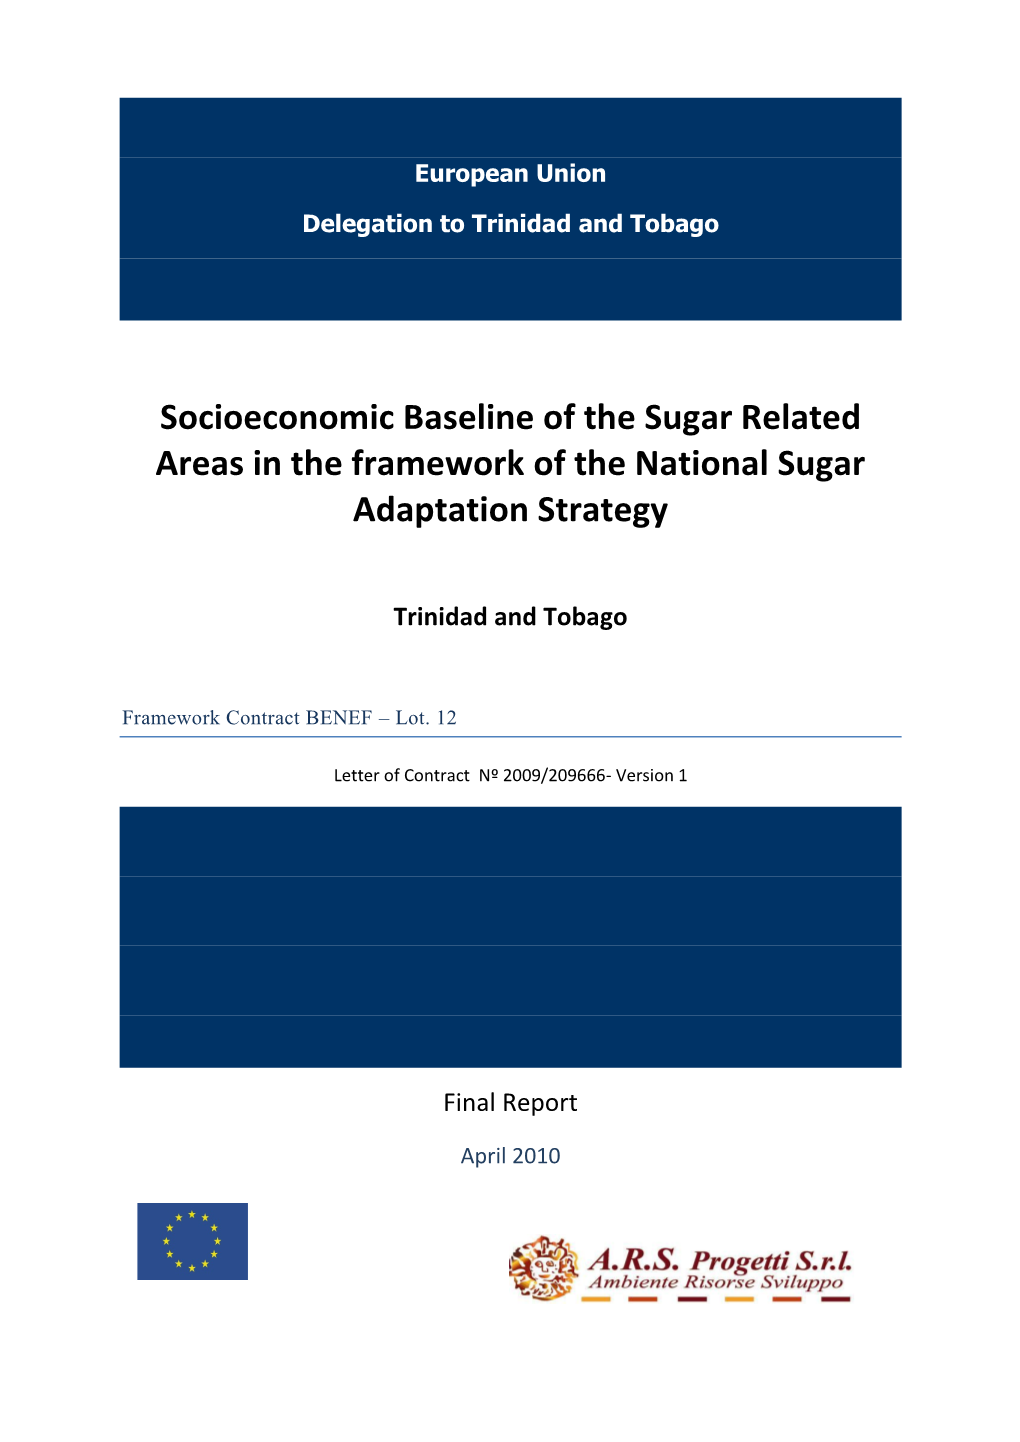 Socio-Economic Baseline of the Sugar Related Areas in Trinidad and Tobago